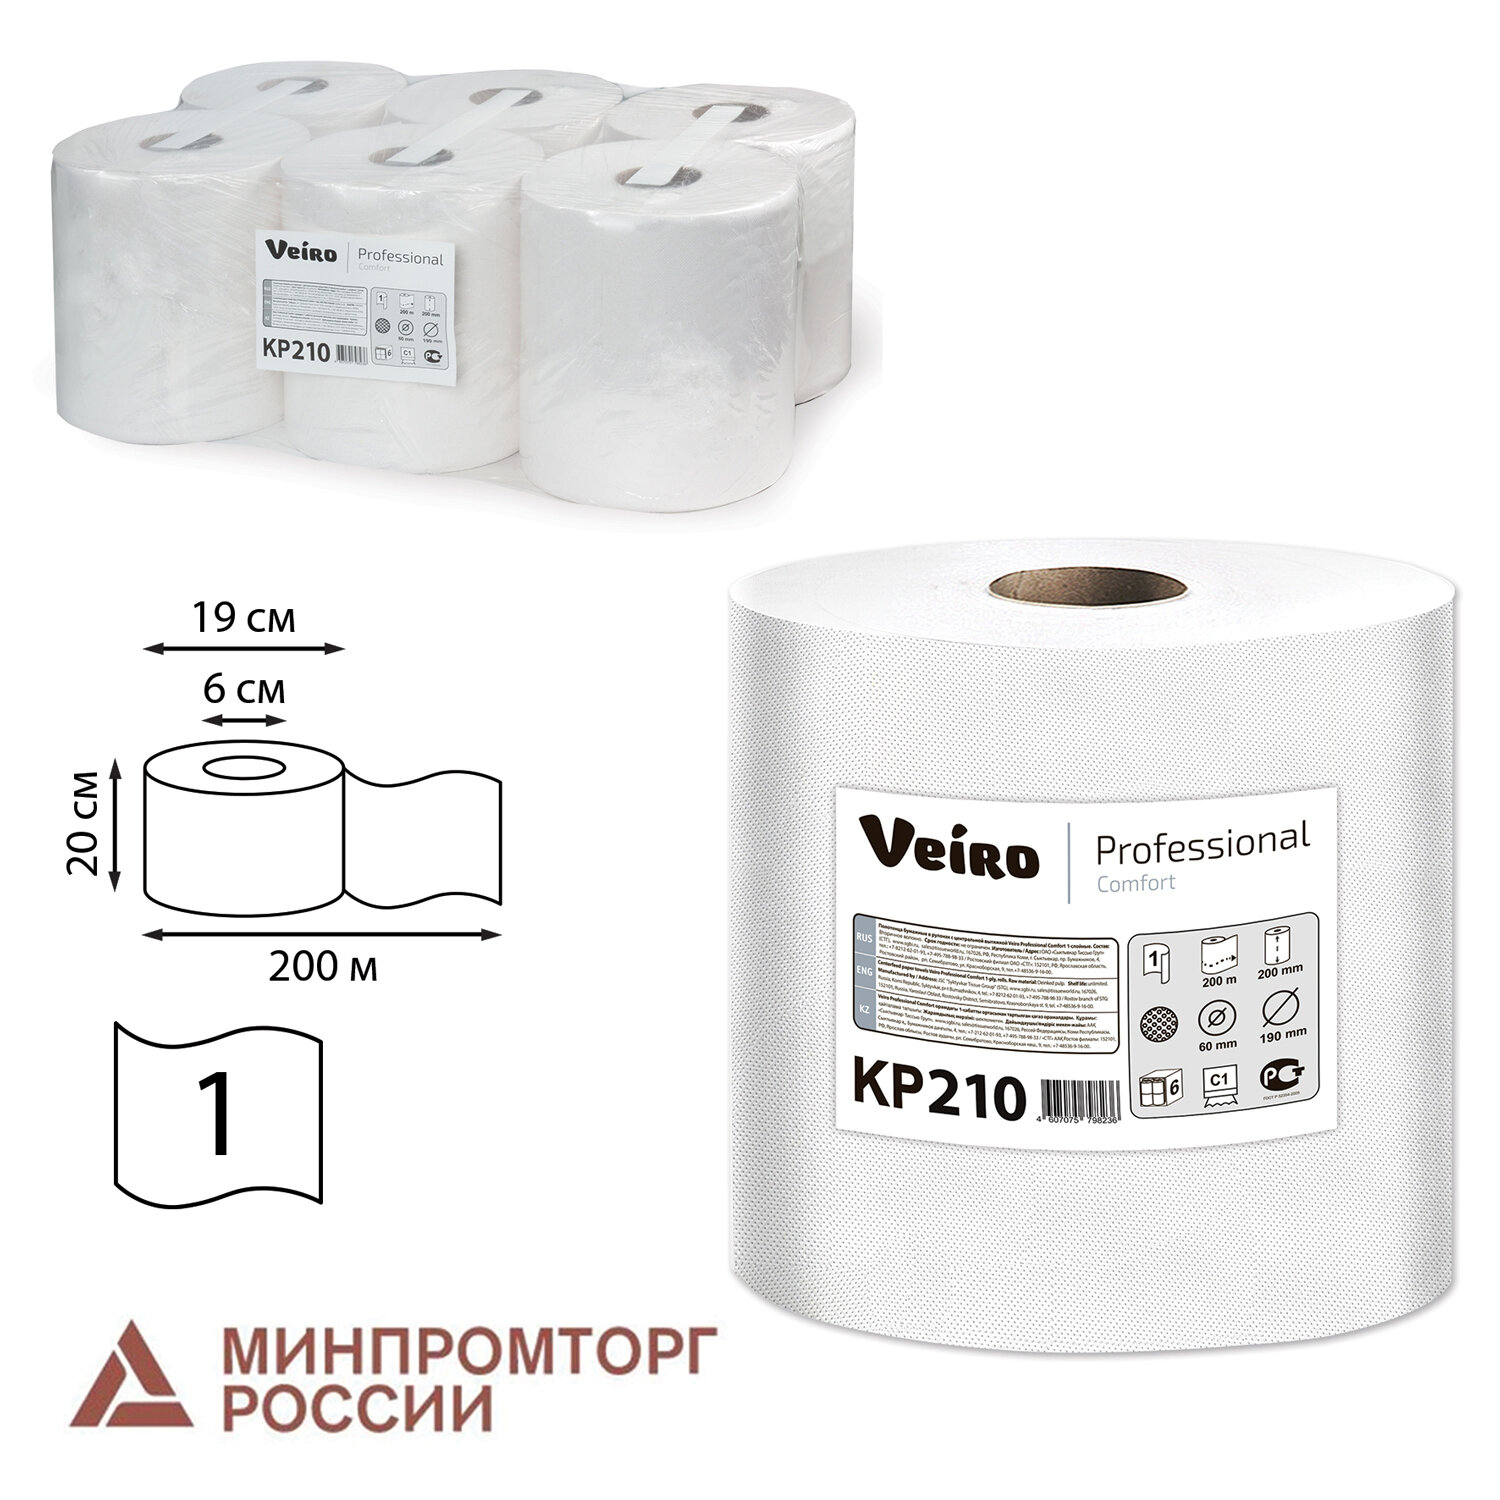 Туалетная бумага и бумажные полотенца  E2E4 Полотенца бумажные Veiro Comfort, слоев: 1, длина 180 м, натуральный, 6 шт. (КР210)